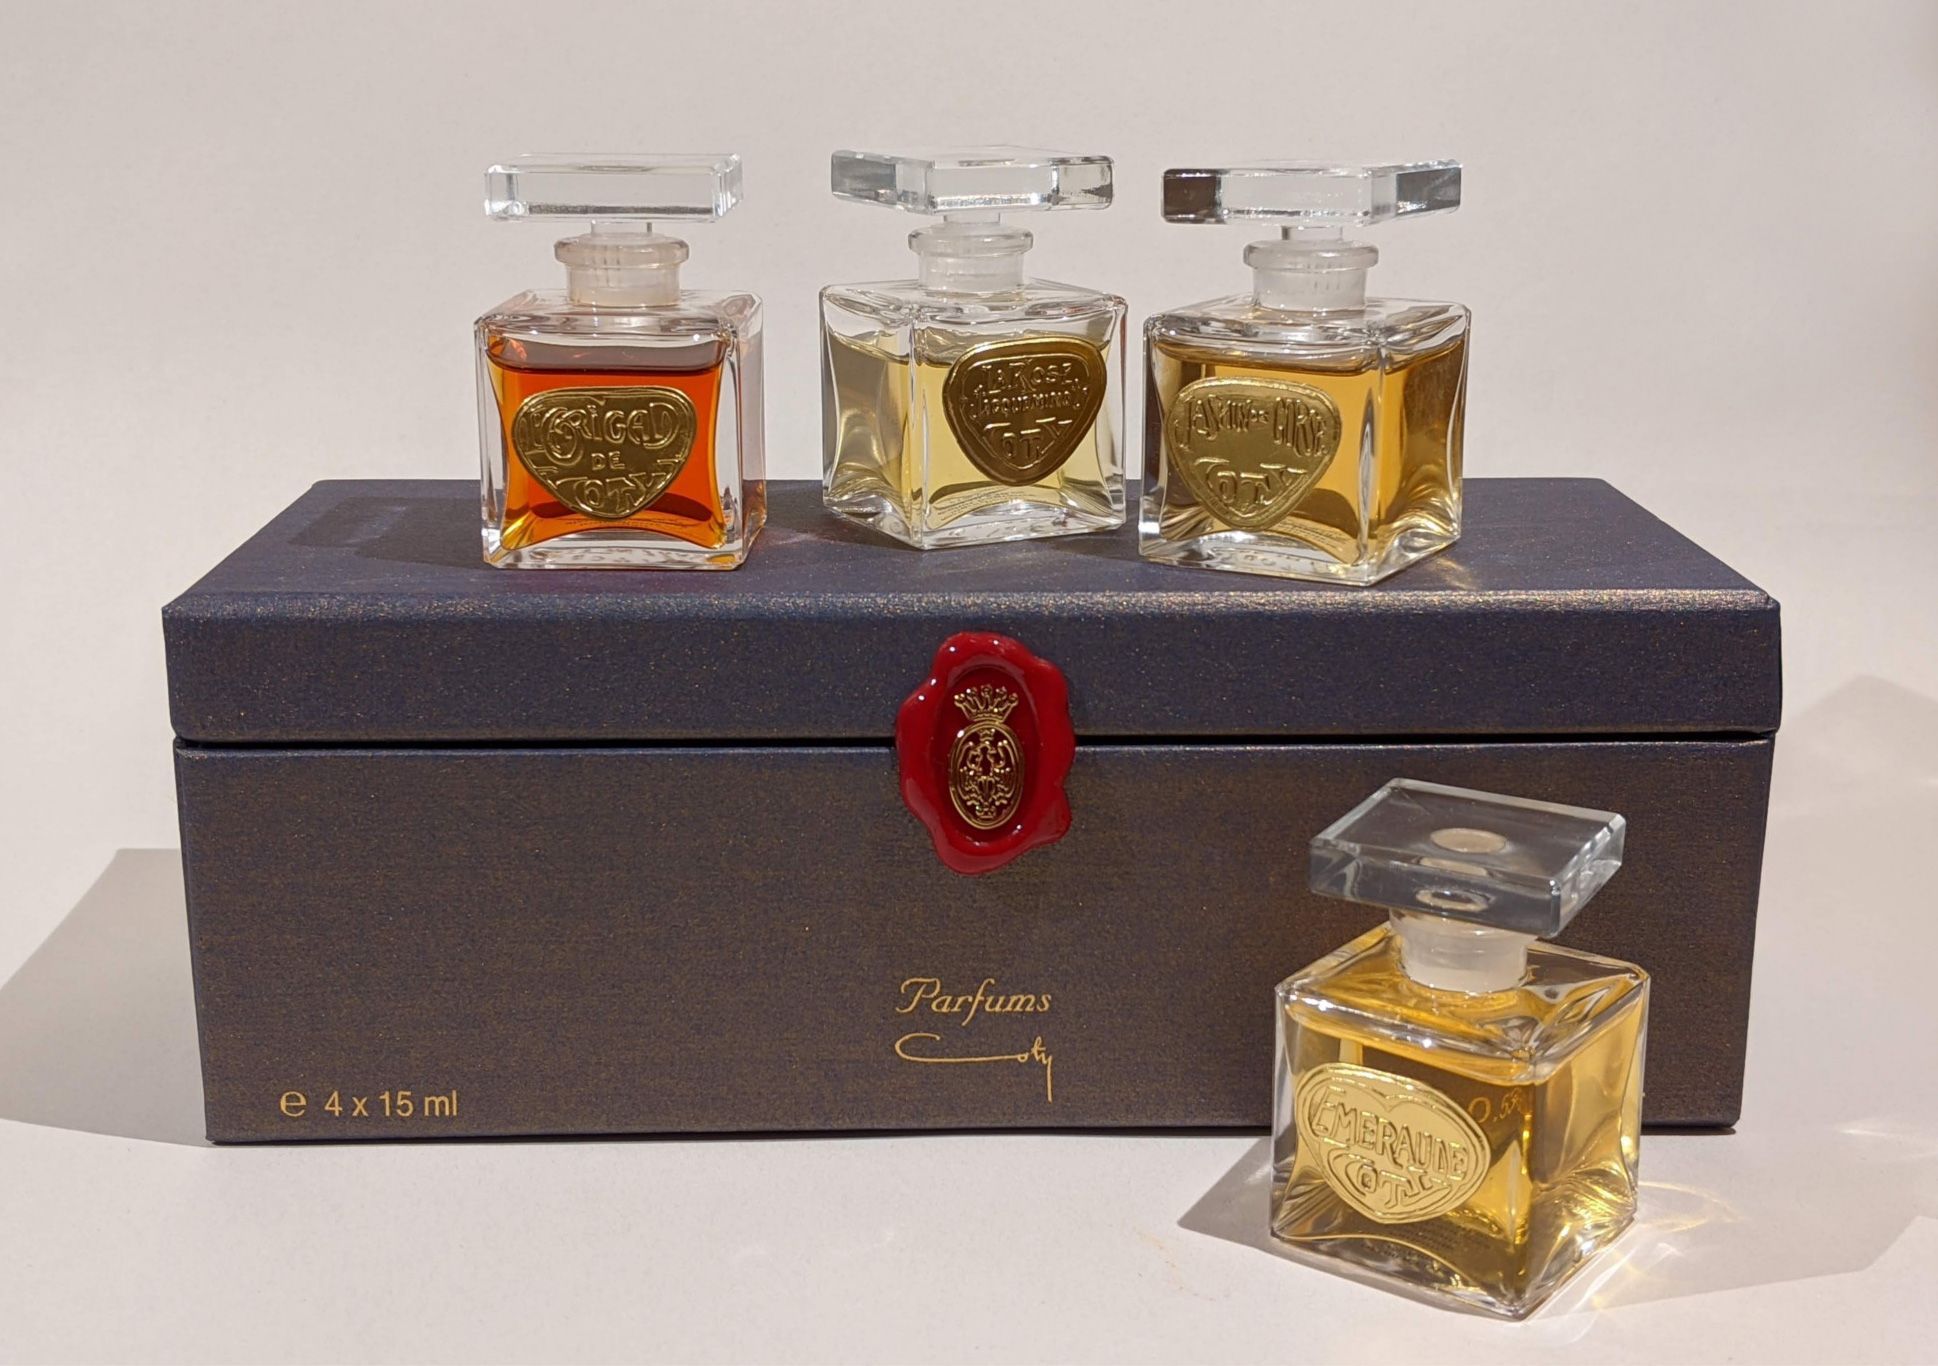 Le Jasmin de Corse Coty perfume - a fragrance for women 2004